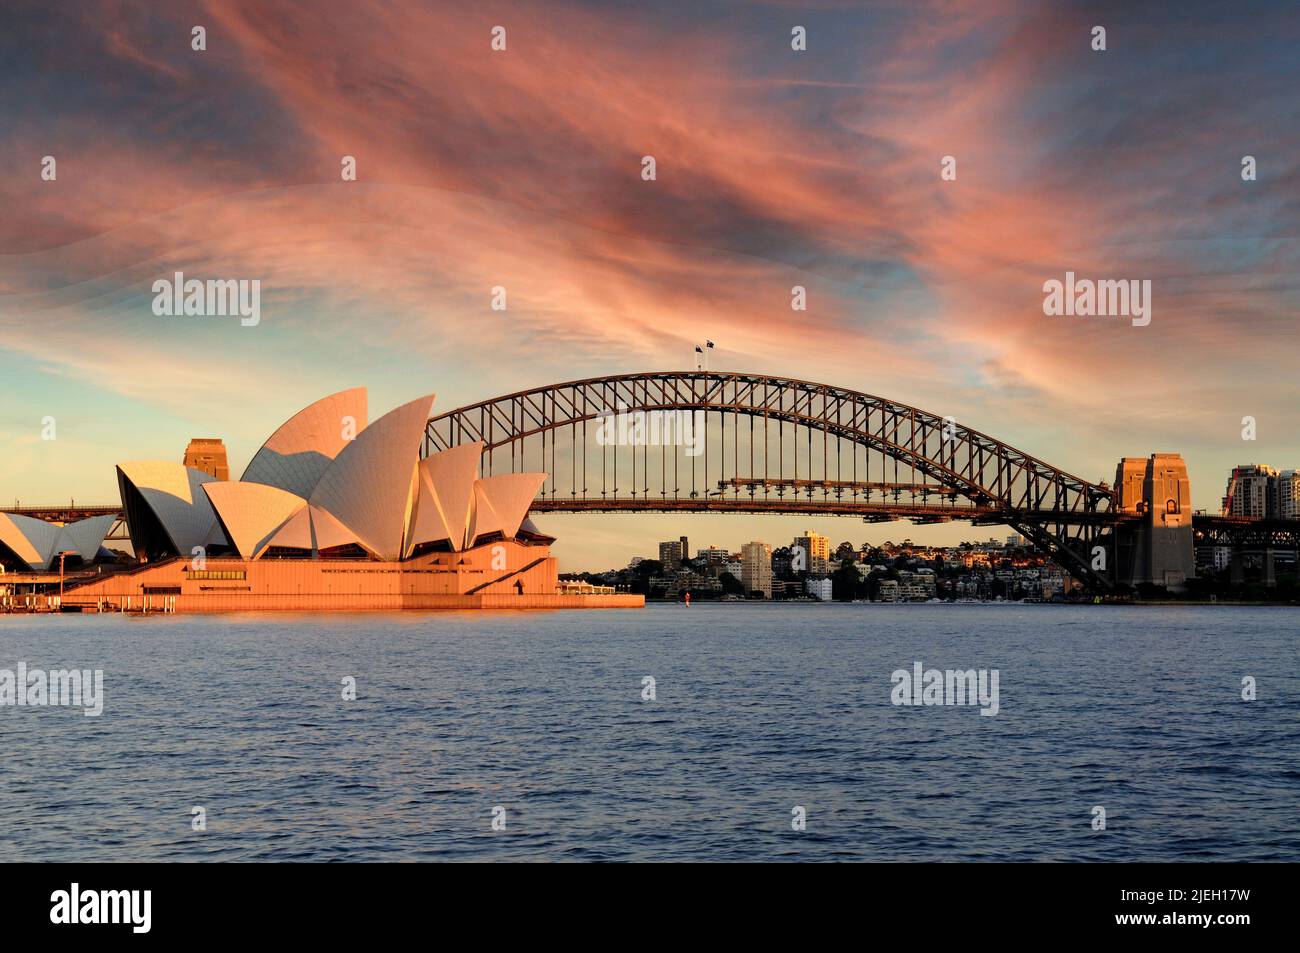 Oper von Sydney von der Harbour Bridge aus gesehen, am frühen Morgen, Sydney, New South Wales, Australien Stock Photo